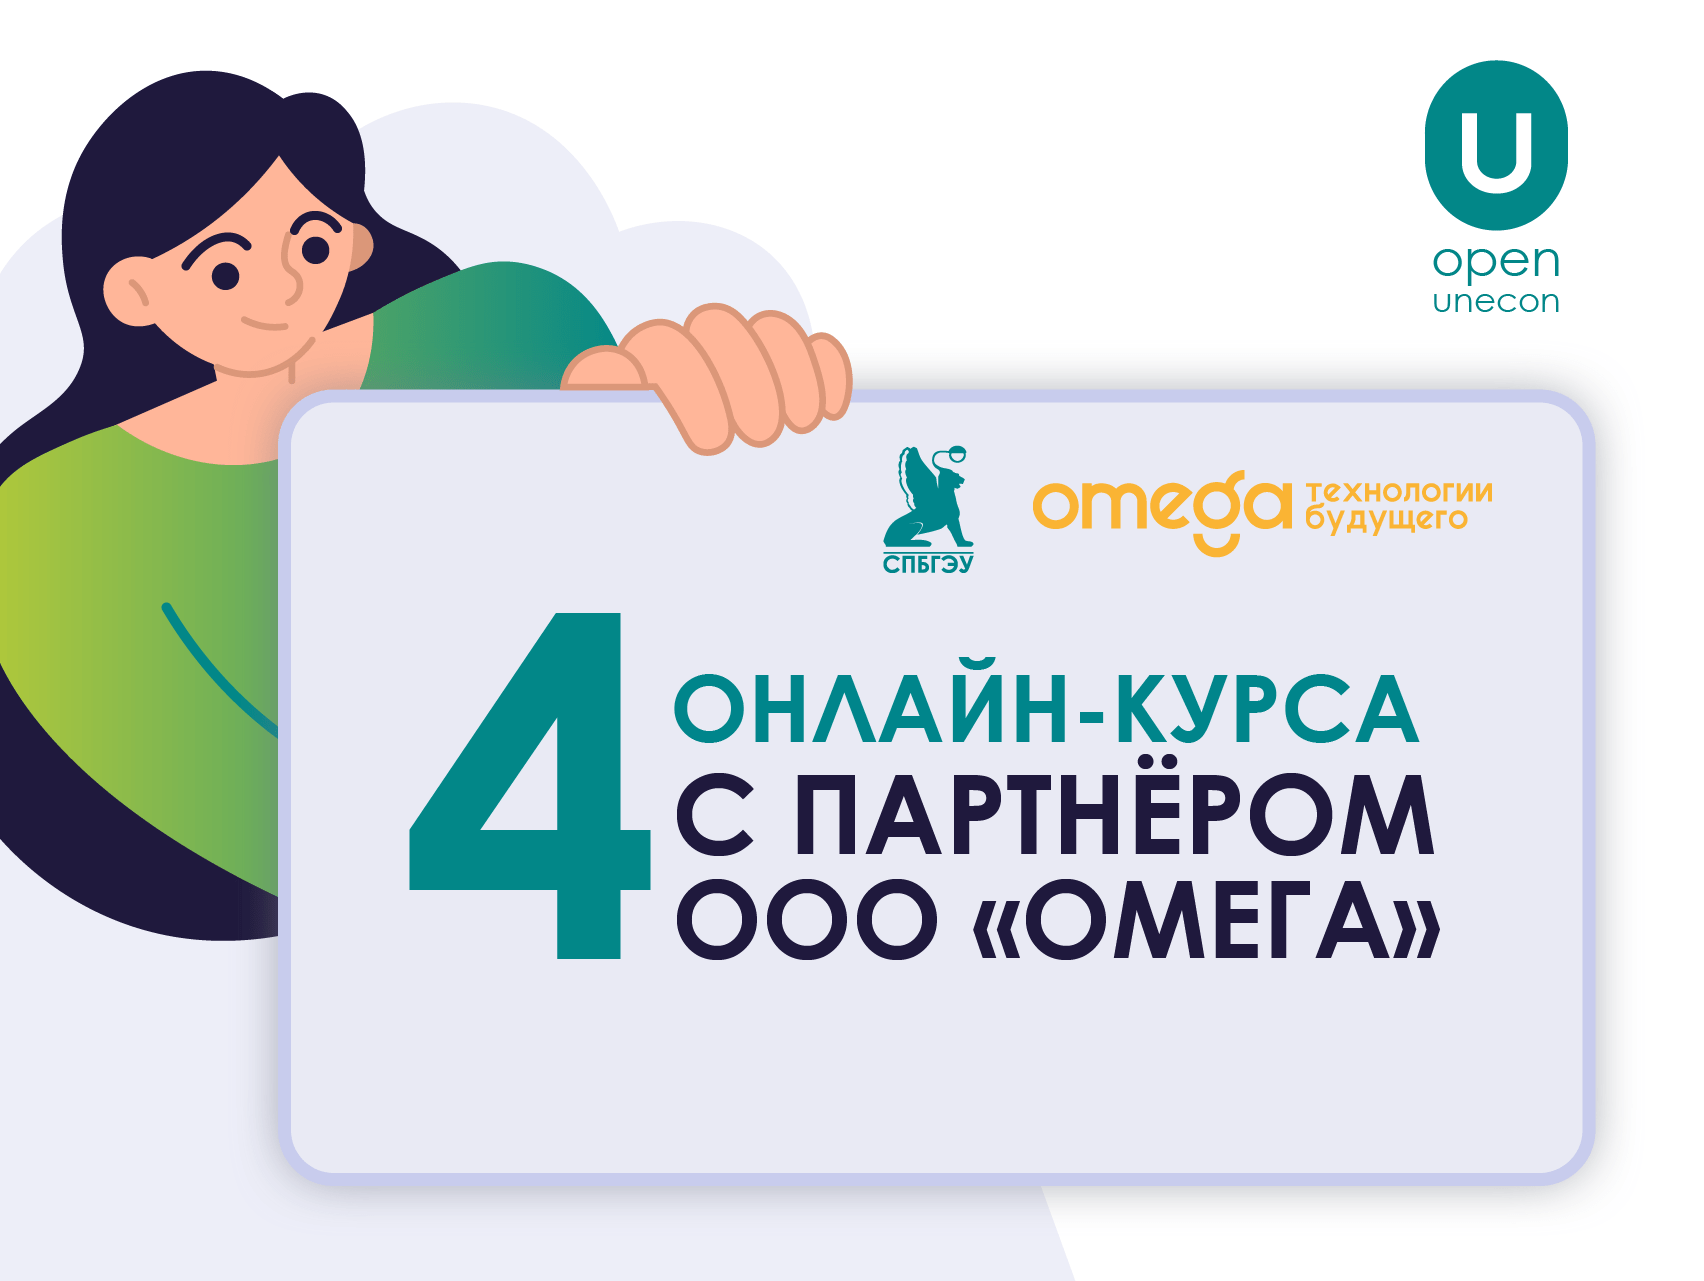 Центр «Открытое образование» СПбГЭУ и ООО «Омега» запускают 4 новых онлайн-курса!